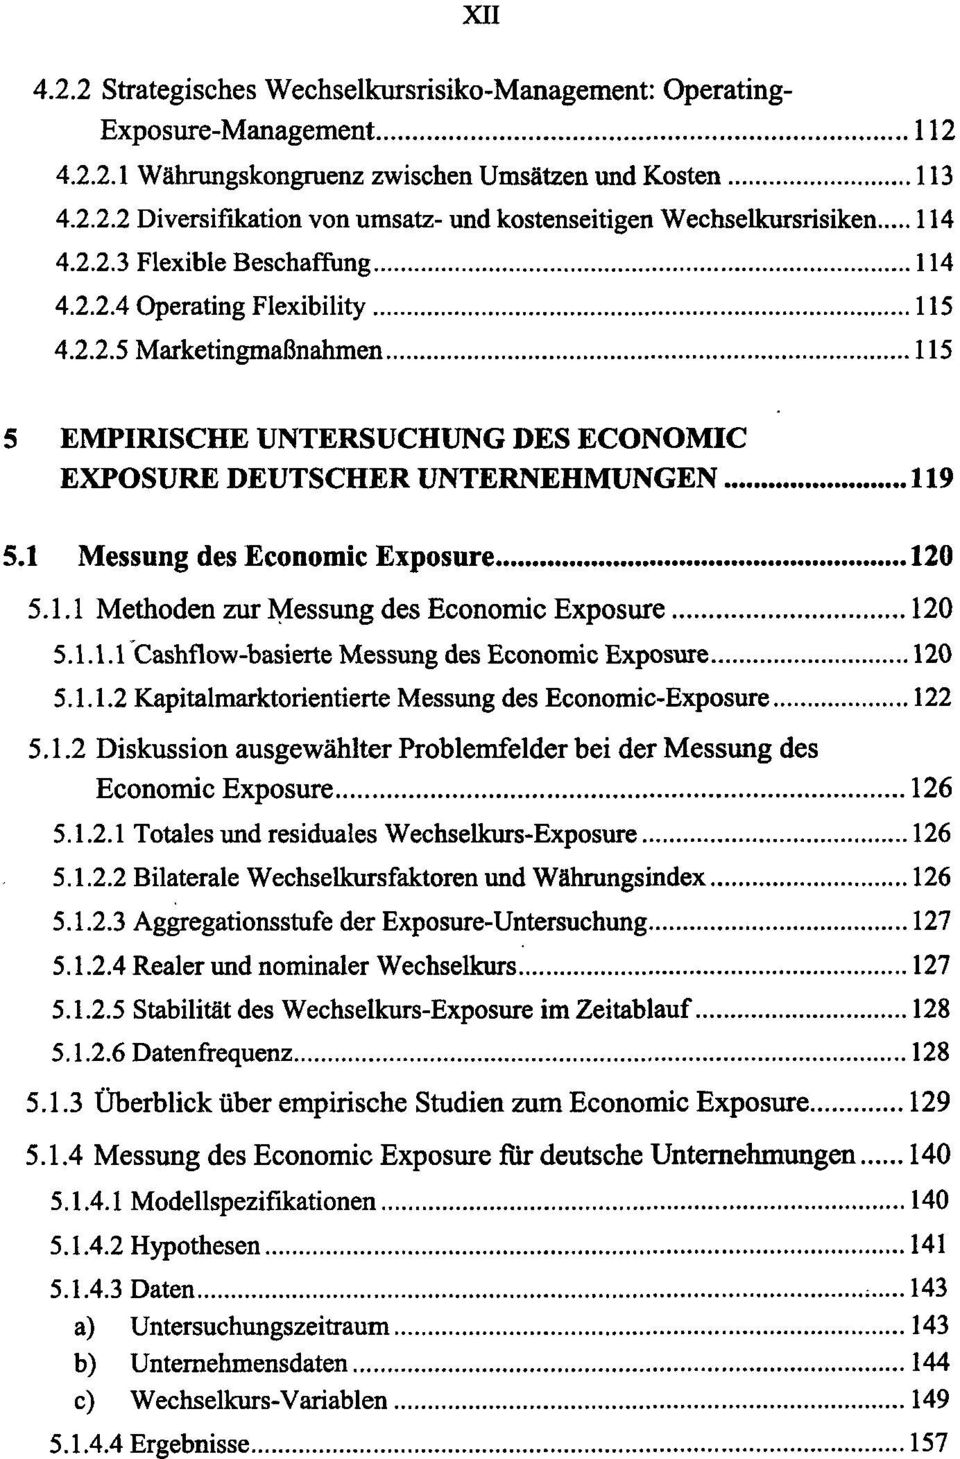 1 Messung des Economic Exposure 120 5.1.1 Methoden zur Messung des Economic Exposure 120 5.1.1.1 Cashflow-basierte Messung des Economic Exposure 120 5.1.1.2 Kapitalmarktorientierte Messung des Economic-Exposure 122 5.